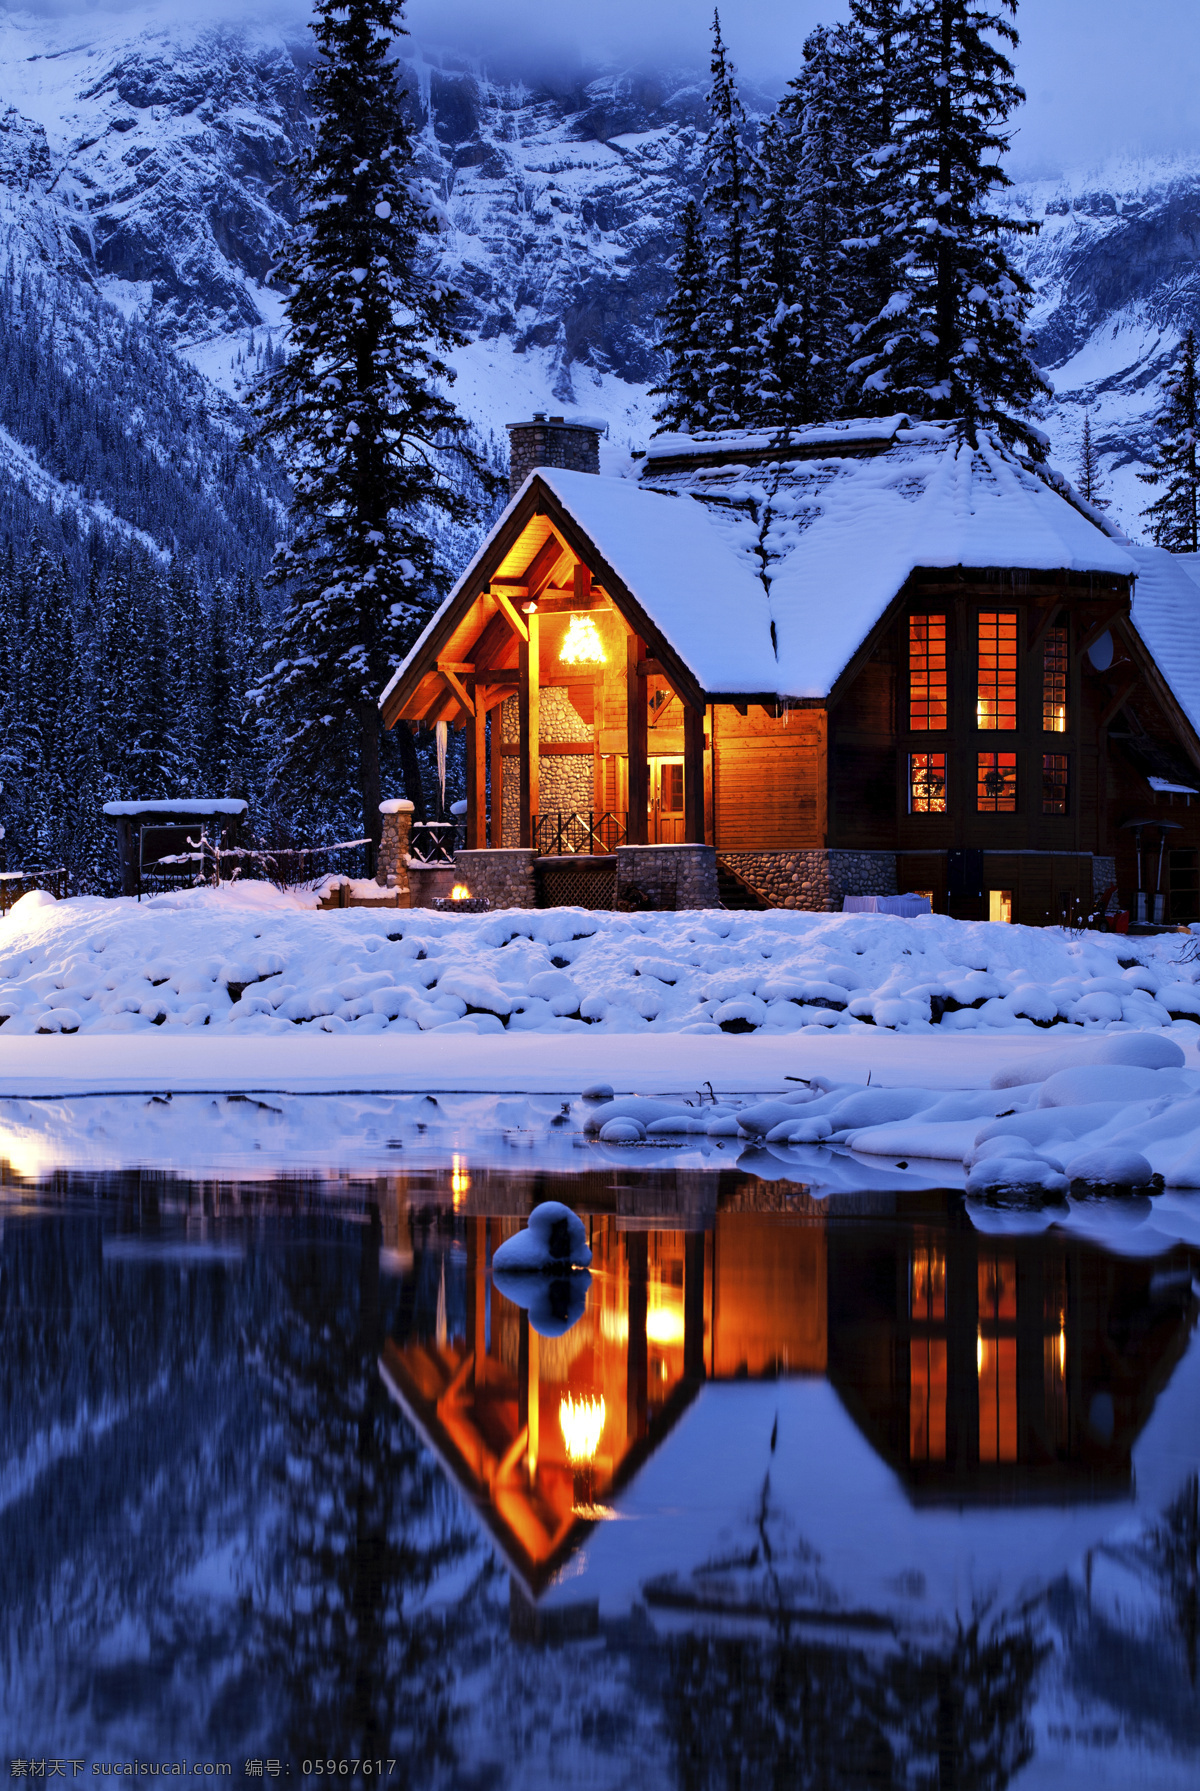 冬天景观摄影 房子 建筑 大树 植物 冬天 冬季 景观 底纹背景 圣诞节 雪景 雪地 自然风景 自然景观 黑色